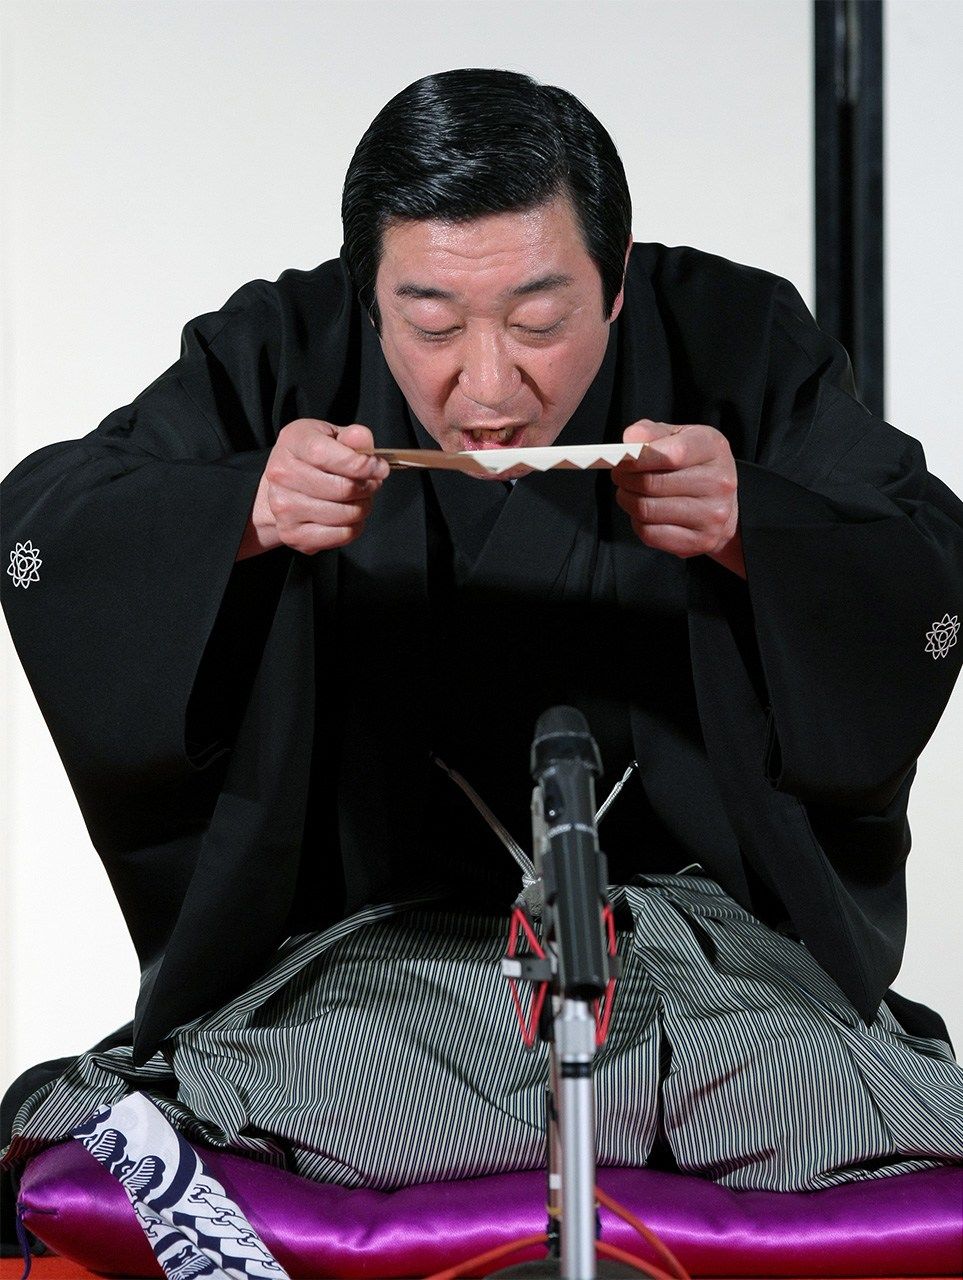 El monologuista de rakugo Sanyūtei Hōraku utiliza un abanico para hacer como si estuviera bebiendo sake durante una de sus actuaciones. (Jiji Press)